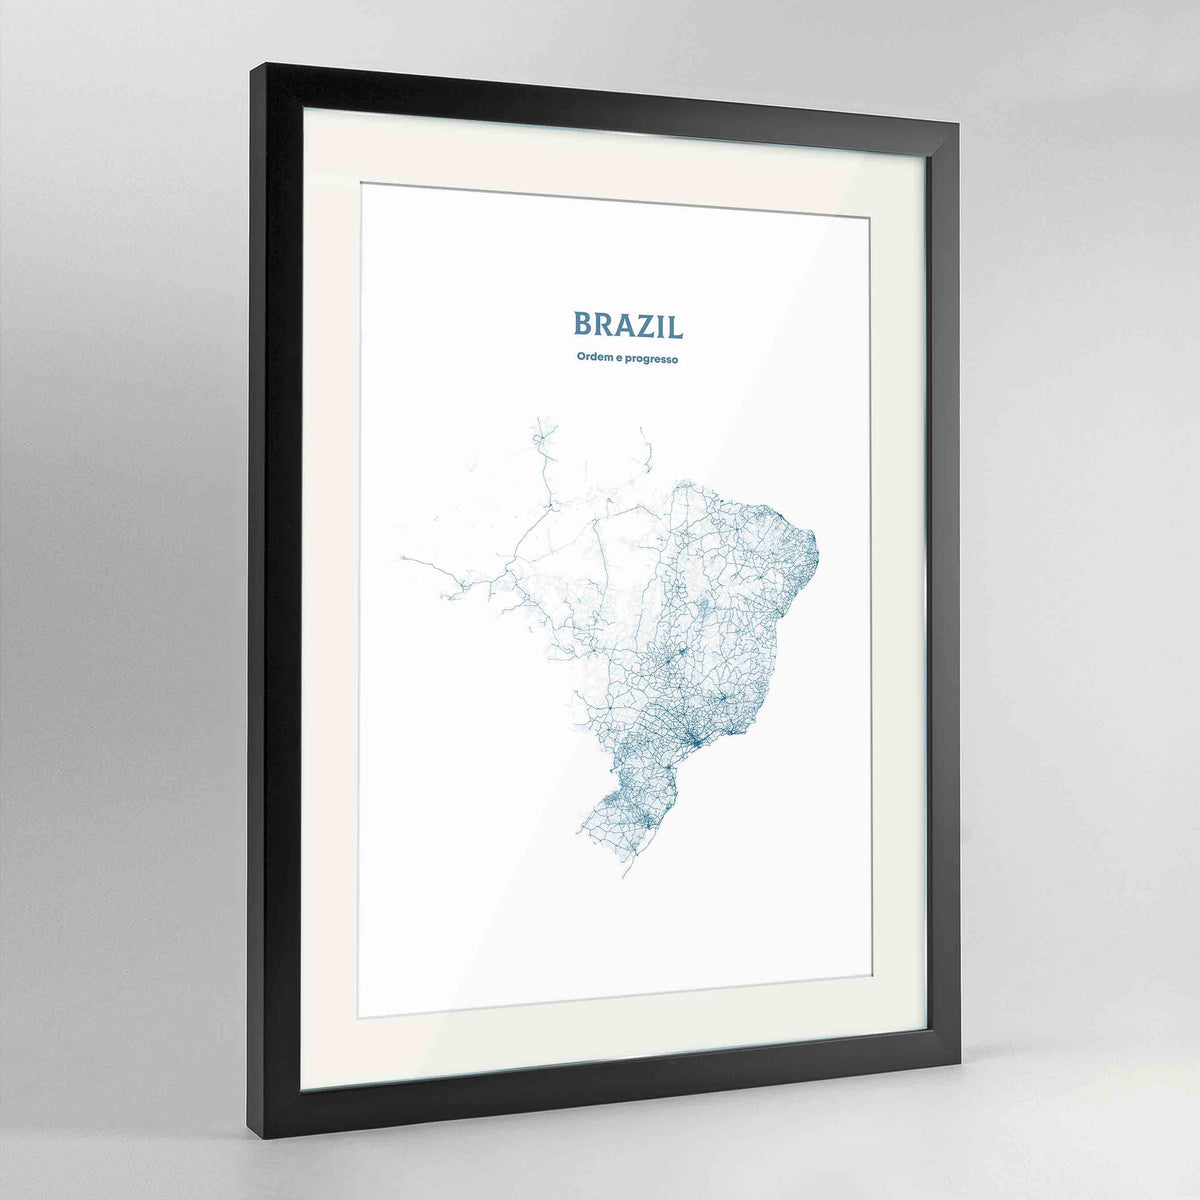 Brazil - All Roads Art Print - Framed